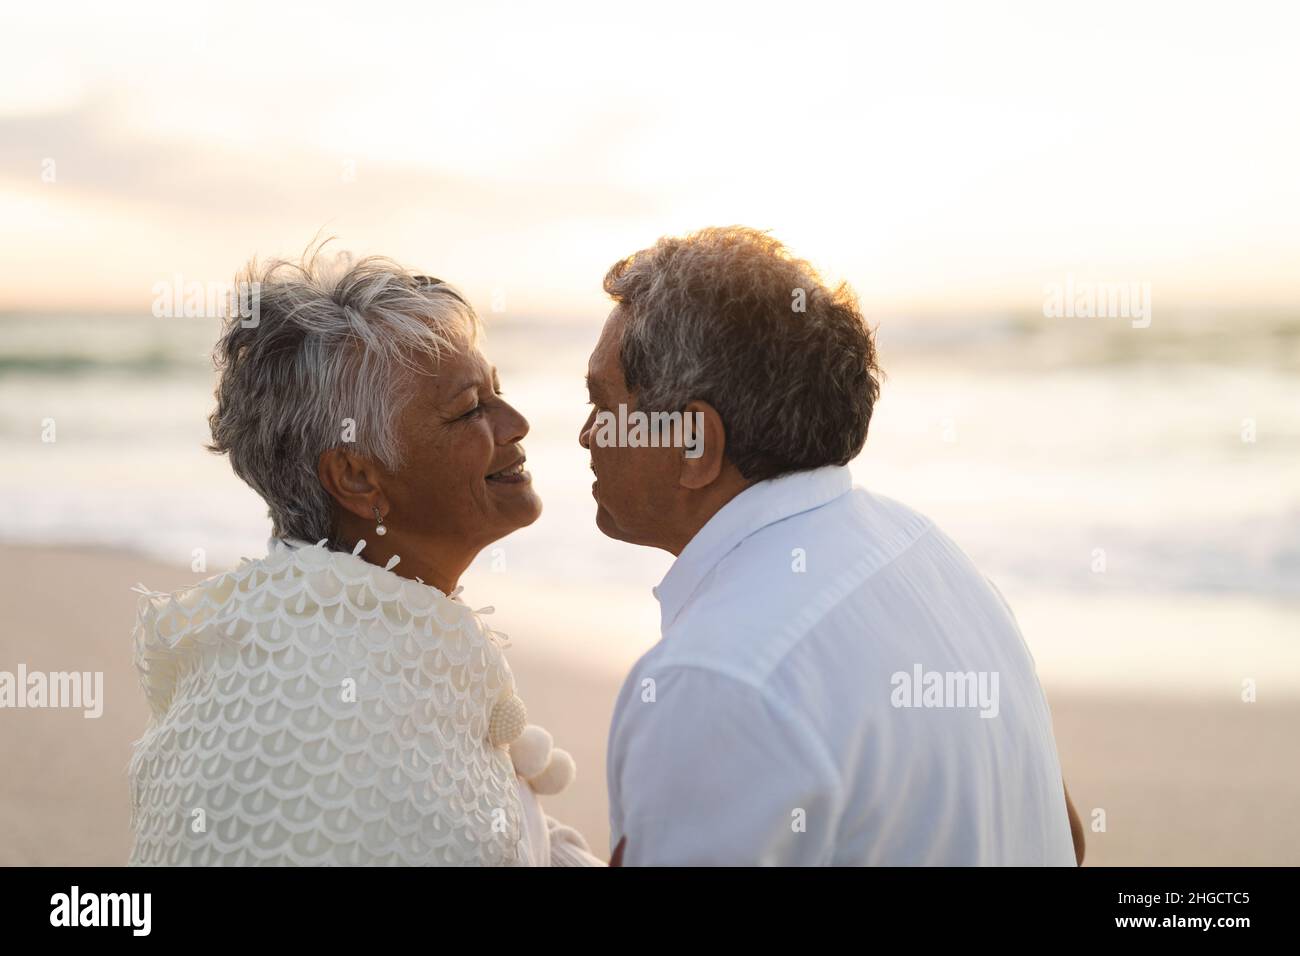 Vue latérale d'un heureux couple multiracial senior regardant les uns les autres romantiquement pendant le coucher du soleil Banque D'Images